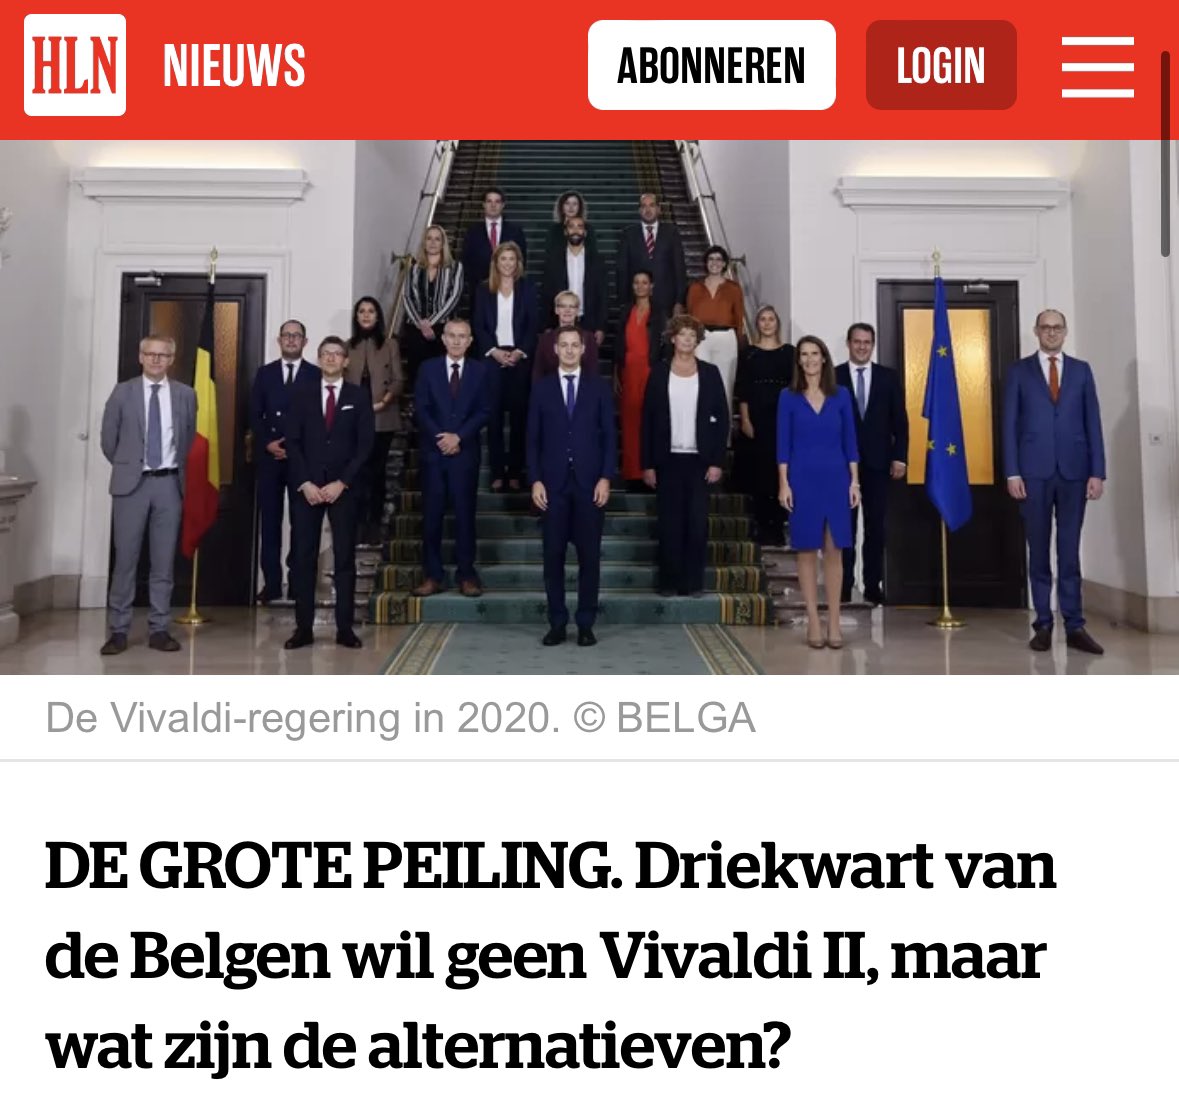 Ik ken alvast één goed alternatief: gewoon géén federale regering en een overdracht van de federale bevoegdheden aan Vlaanderen. 😉